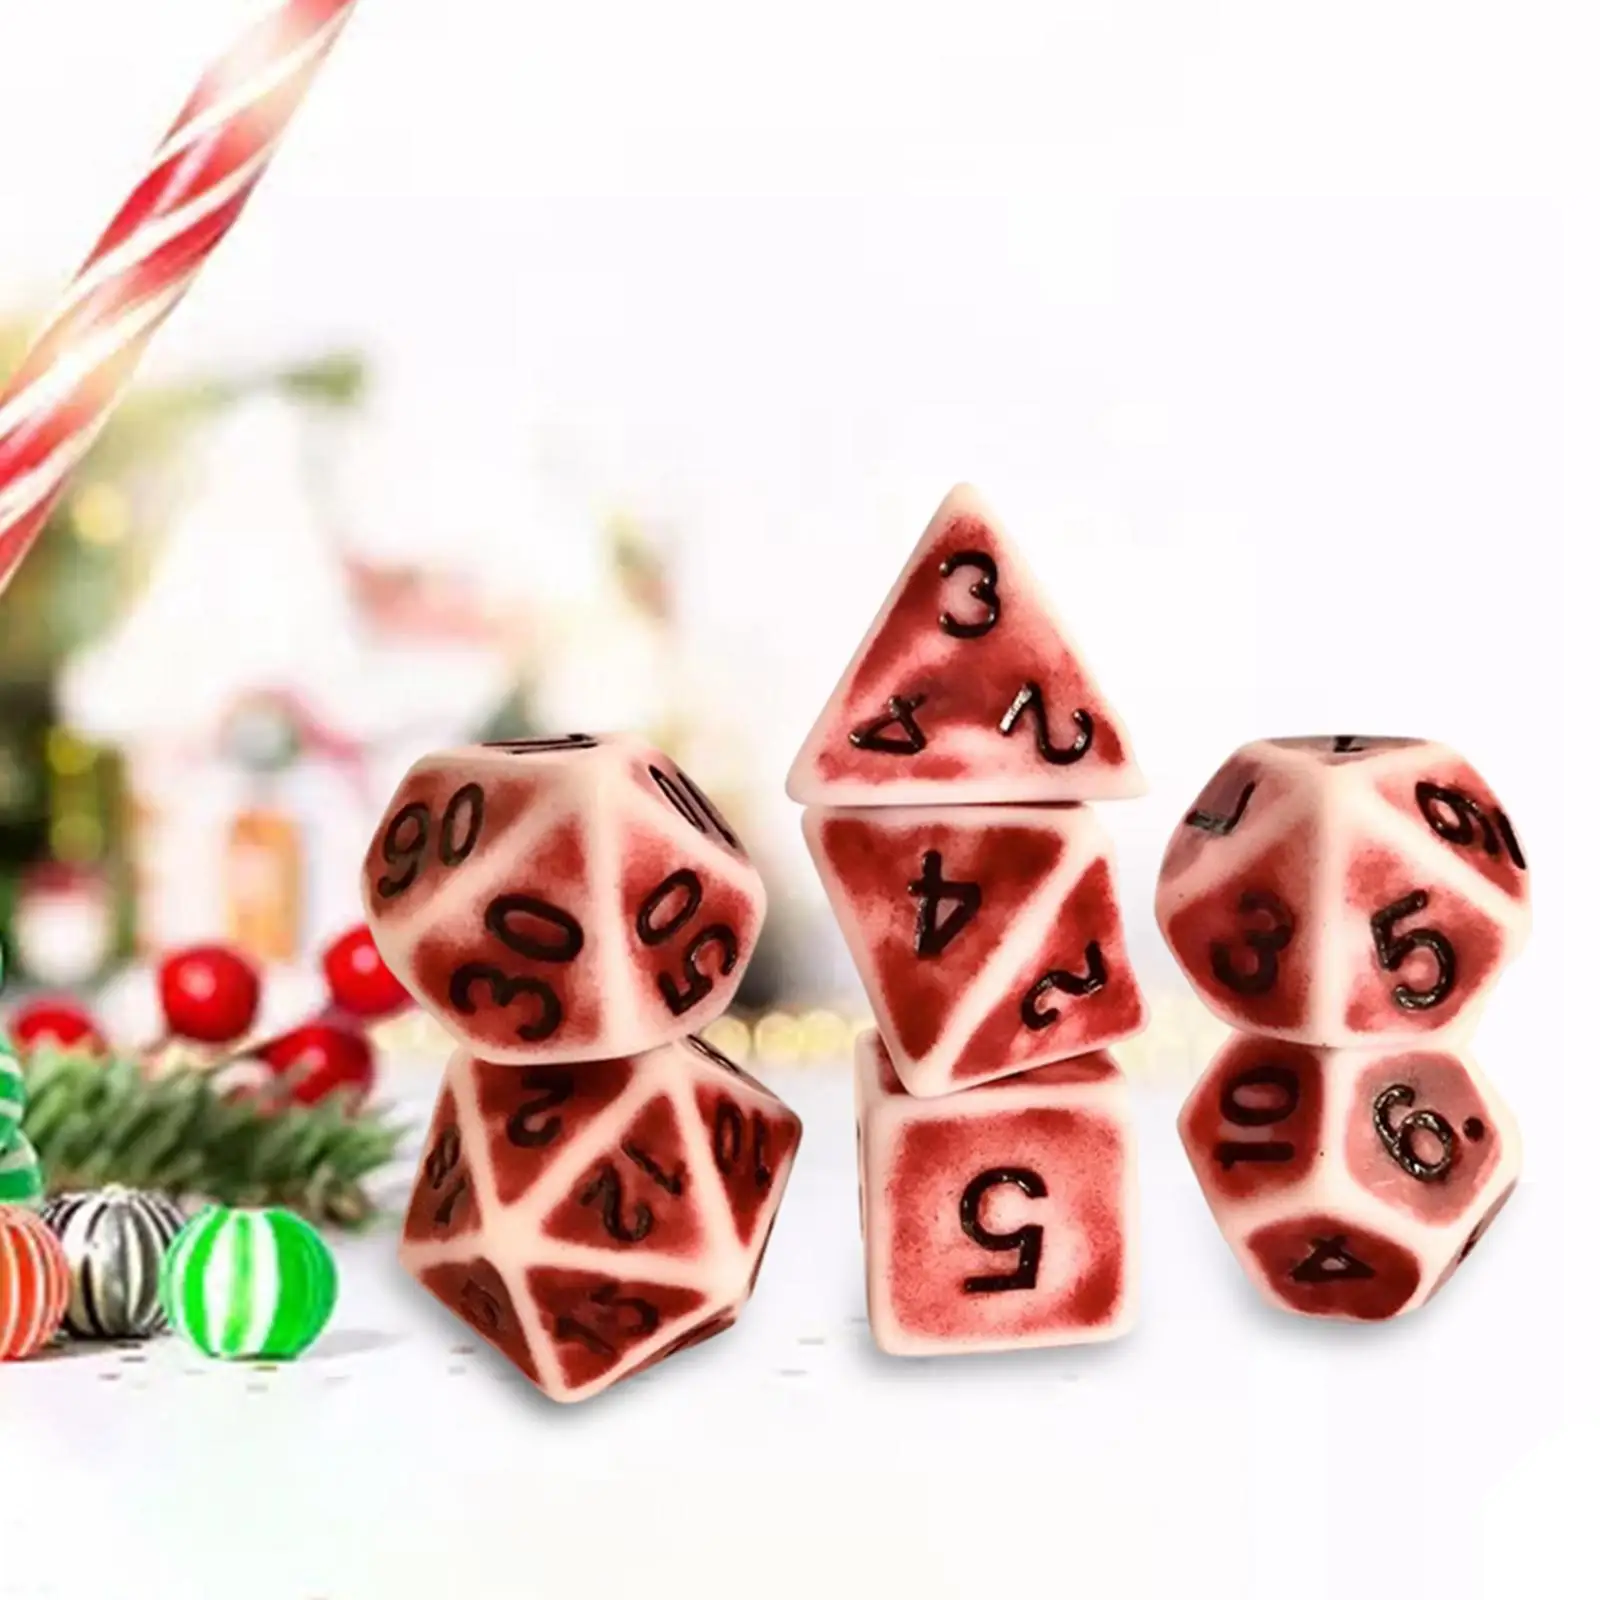 Set of 7 7-Die Polyhedral Dice Retro Color D4 D6 D8 D10 D10 D12 D20 for Table Games